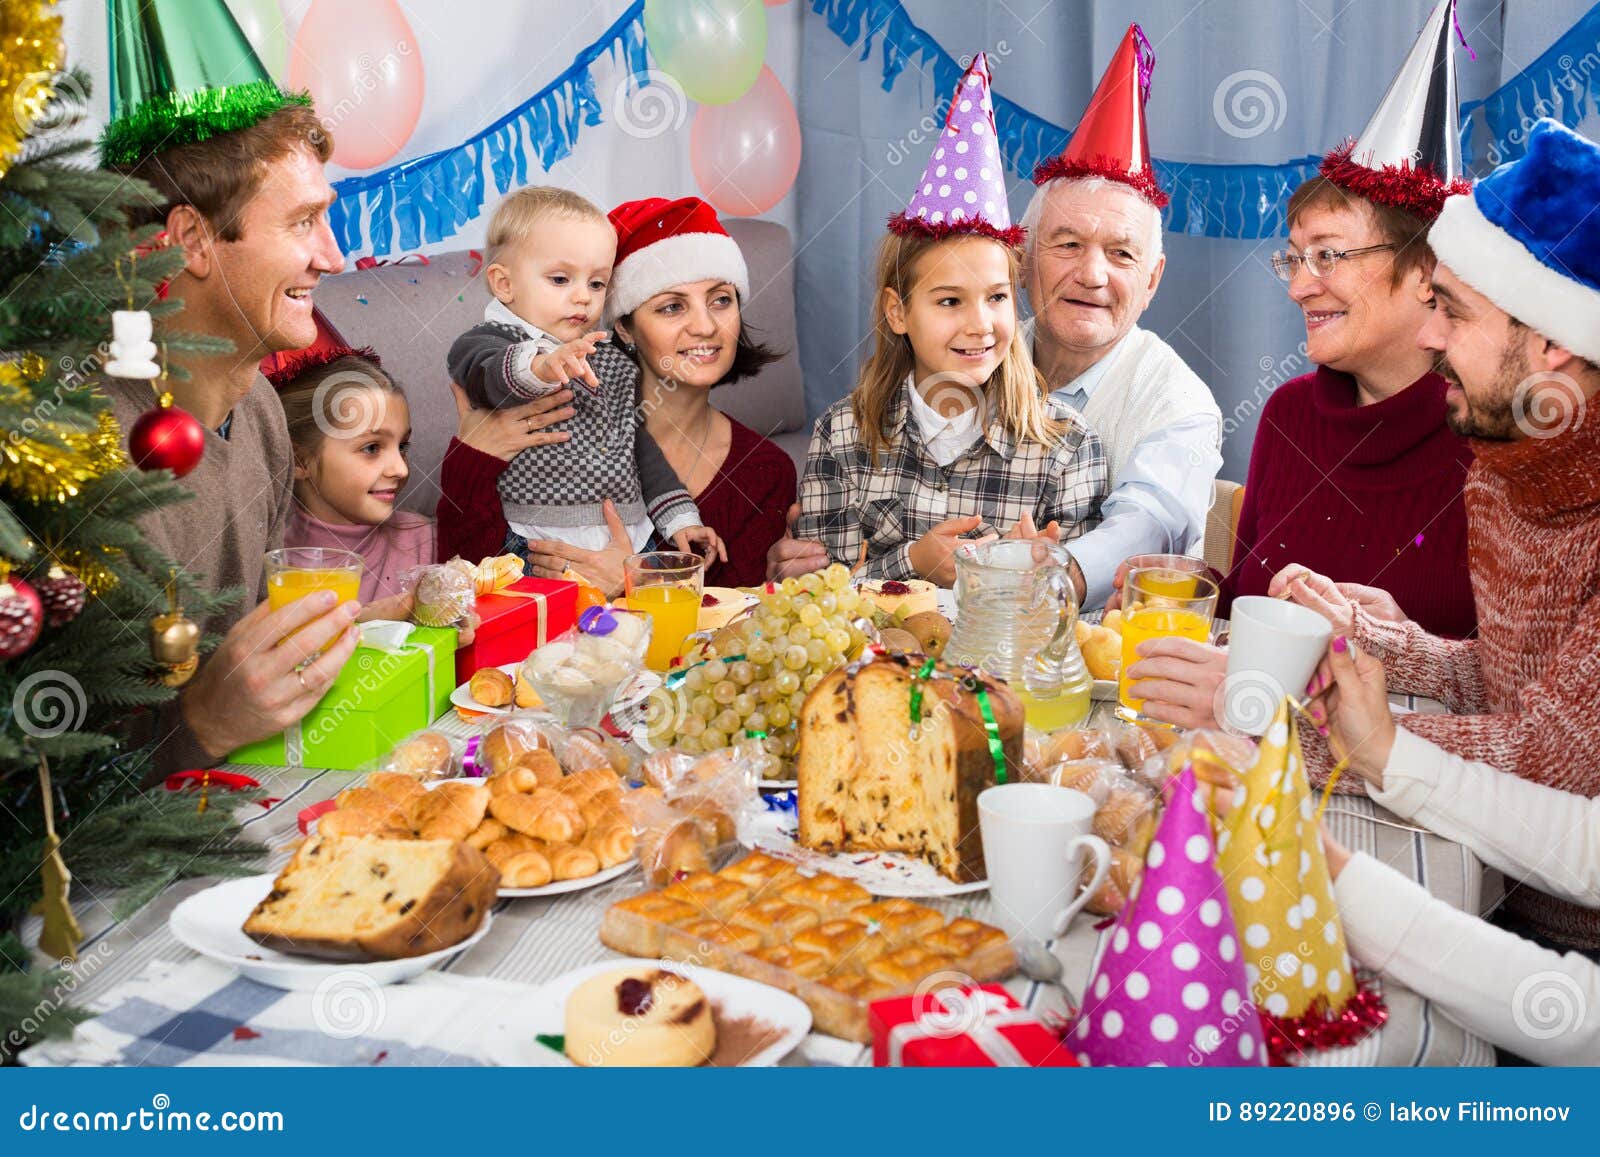 Famille Celebrant L Anniversaire De Childrena S Pendant Le Diner De Fete Photo Stock Image Du Groupe Anniversaire 26